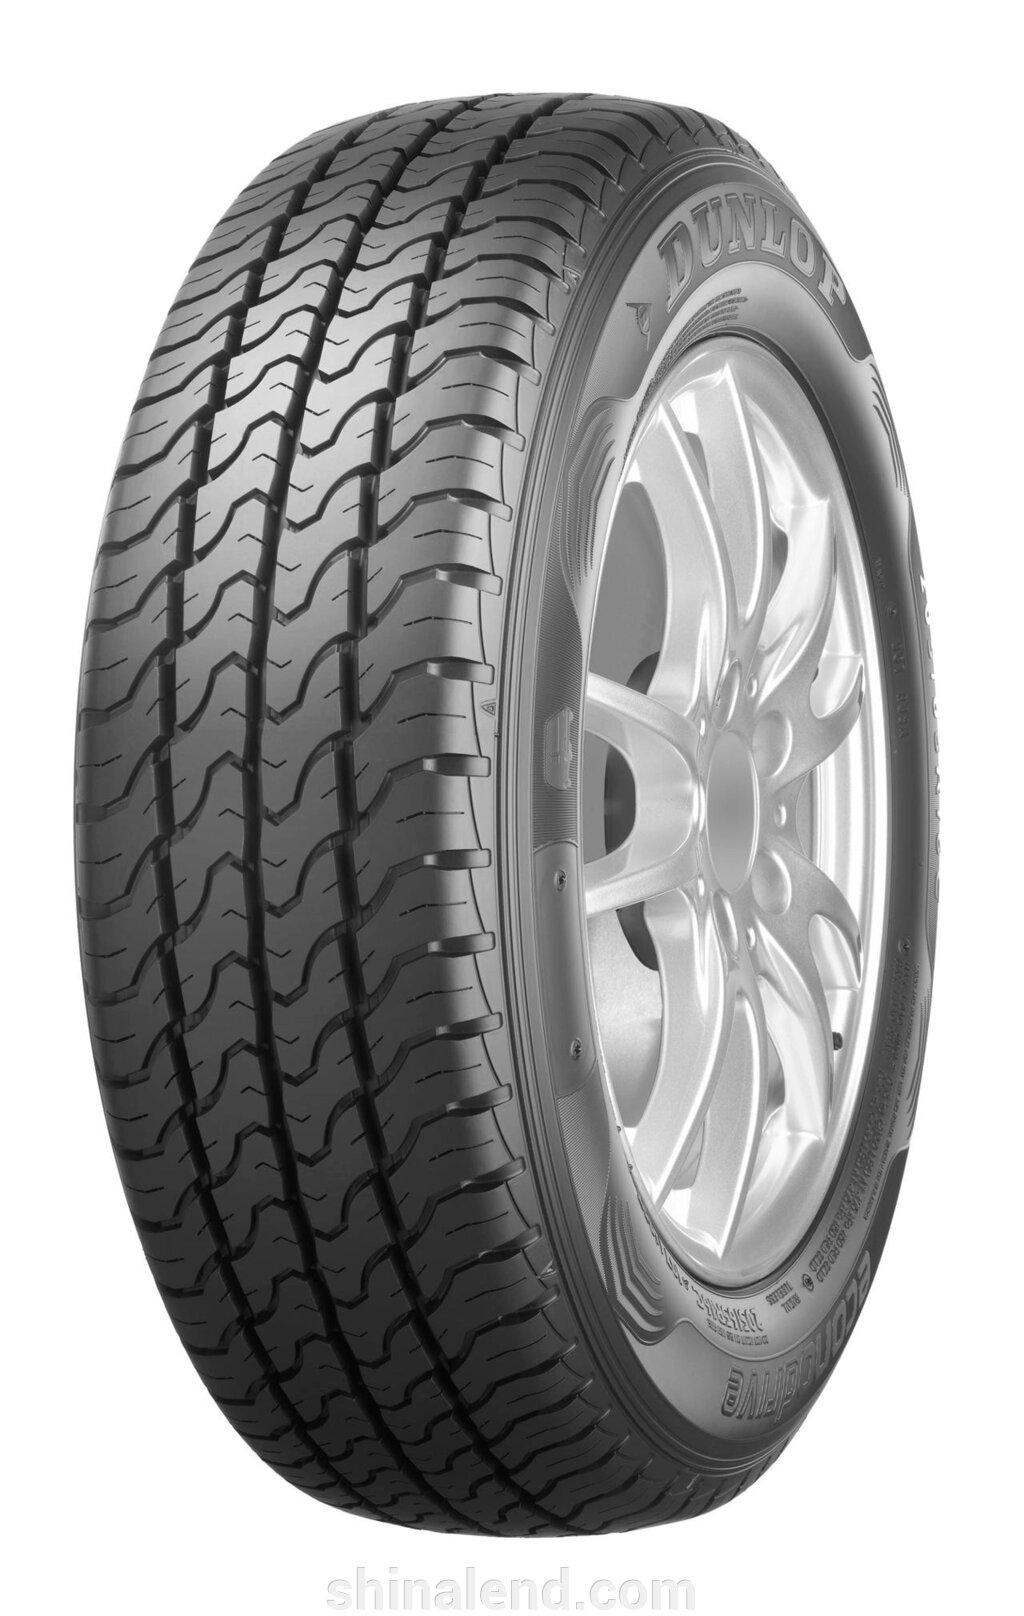 Літні шини Dunlop EconoDrive 205/75 R16C 110/108R Таїланд 2021 — Оплата Частинами від компанії ШінаЛенд - Оплата Частинами - фото 1